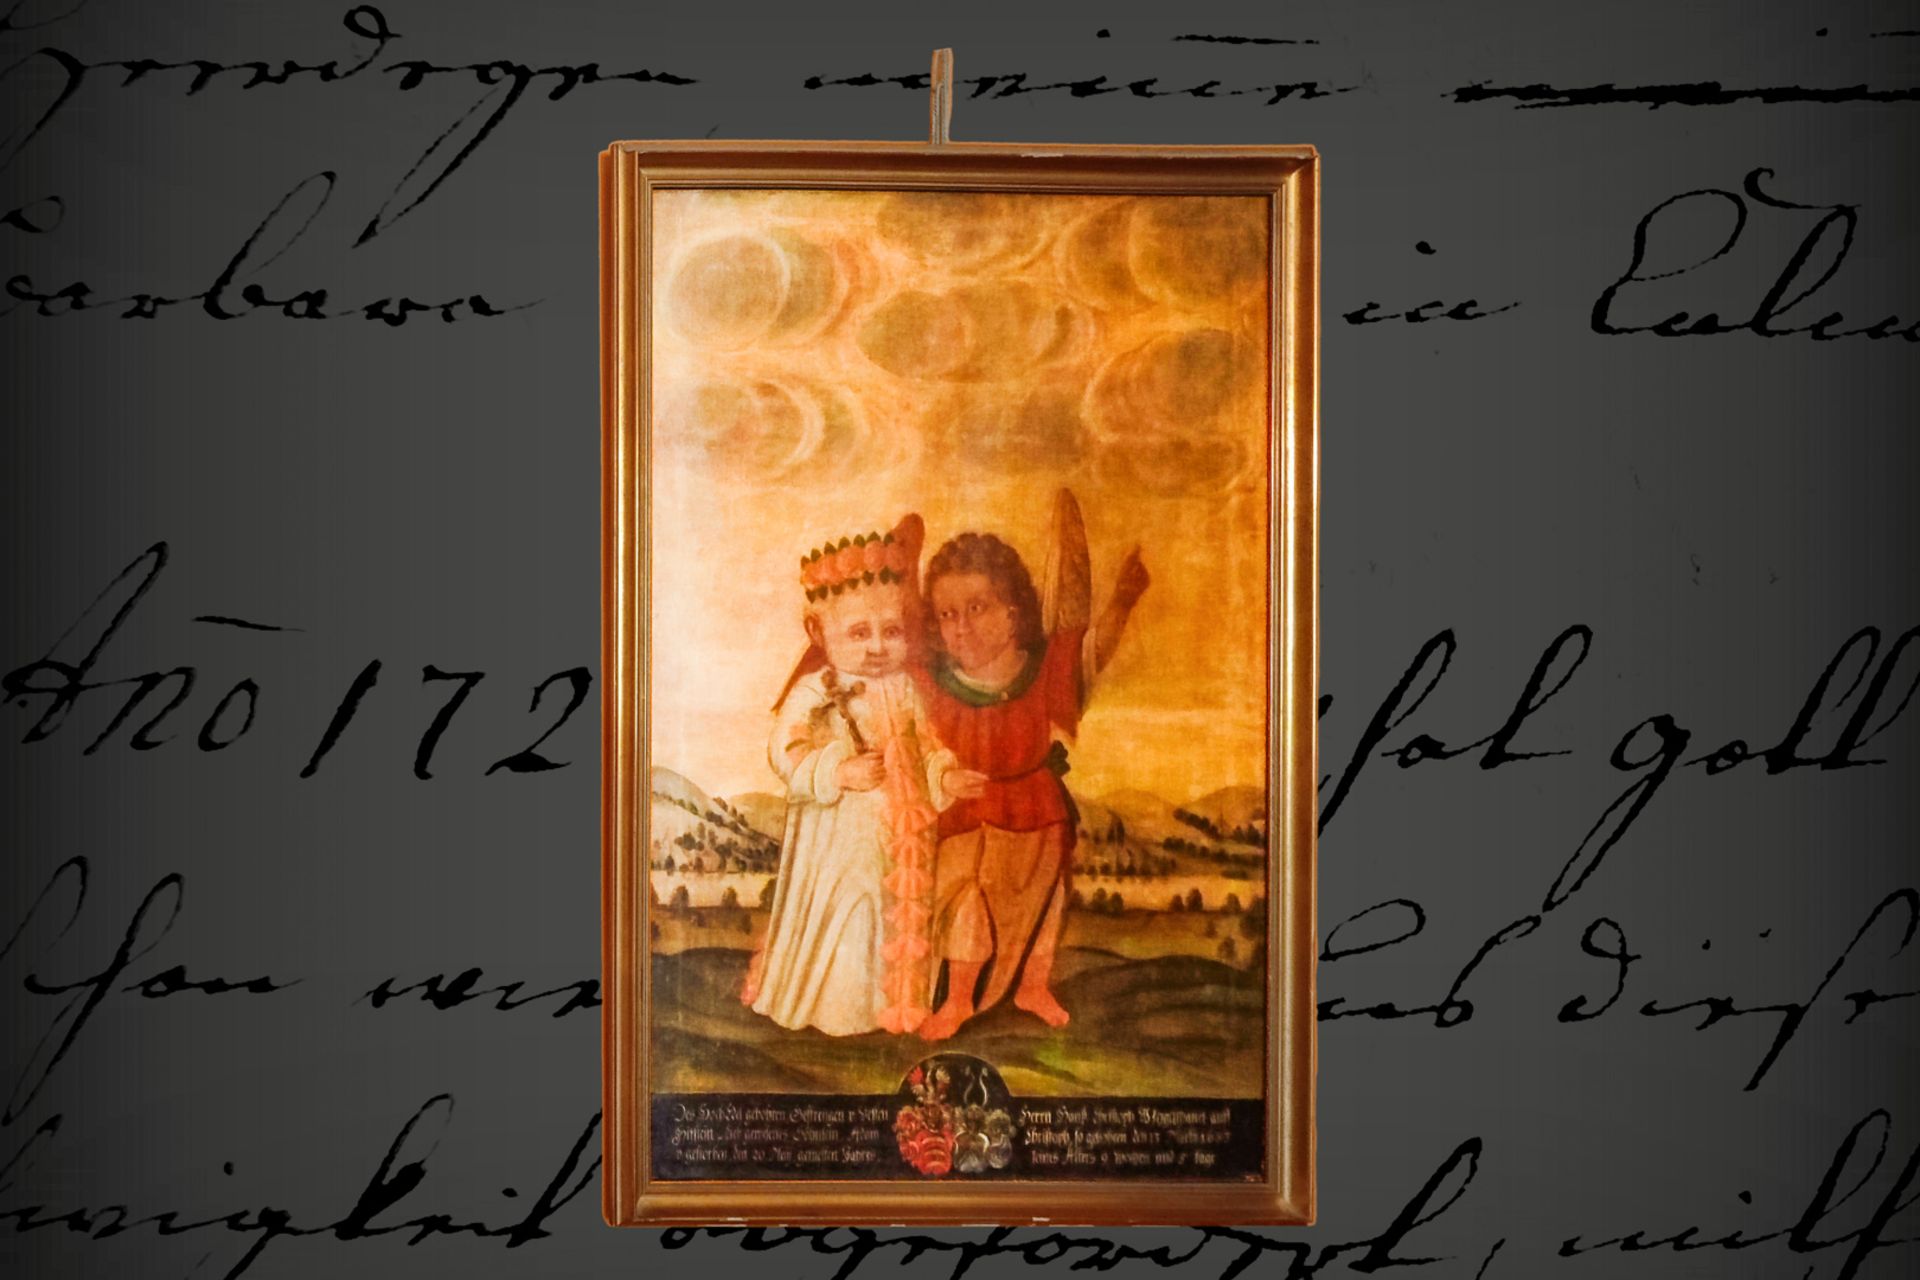 Altes Ölgemälde, jung verstorbenes Kind mit Engel, Öl auf Leinwand, 17. Jh., mit Wappen und